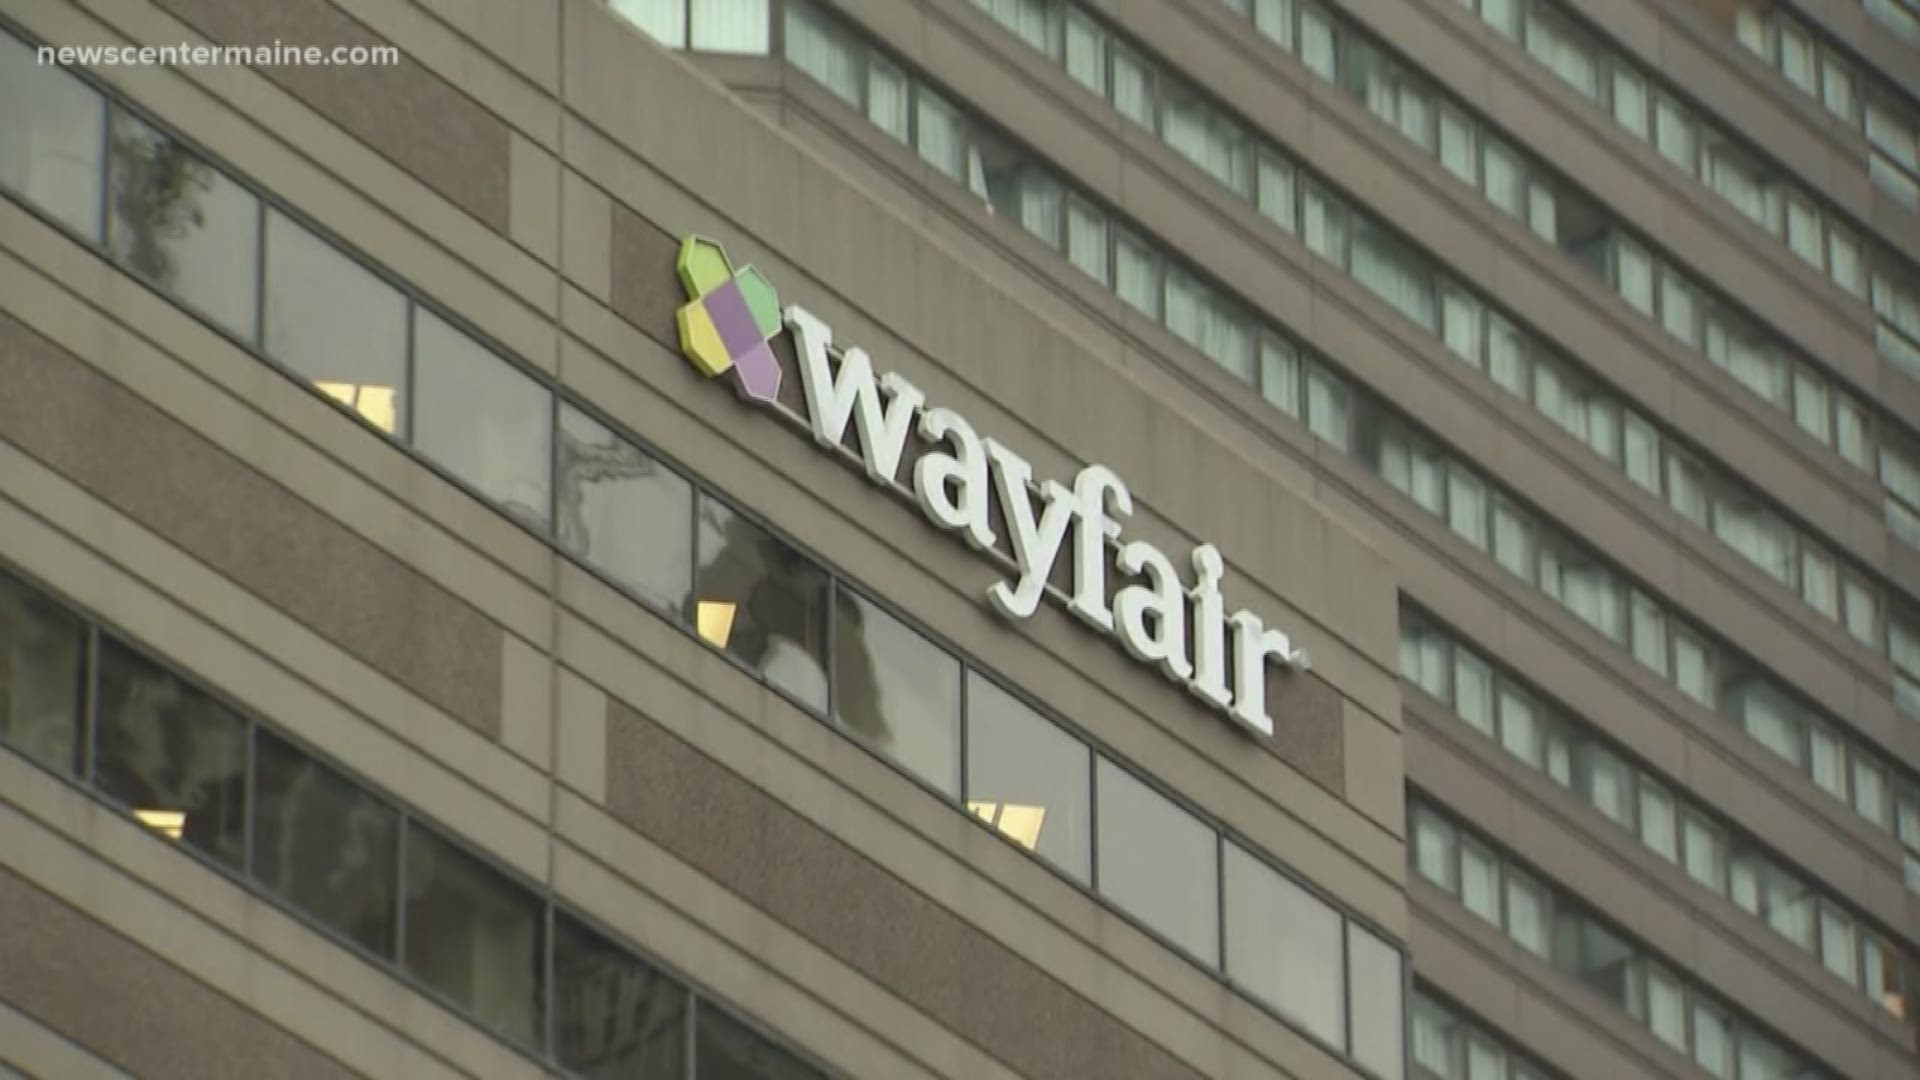 Mass layoff at Bostonbased Wayfair affects Brunswick employees